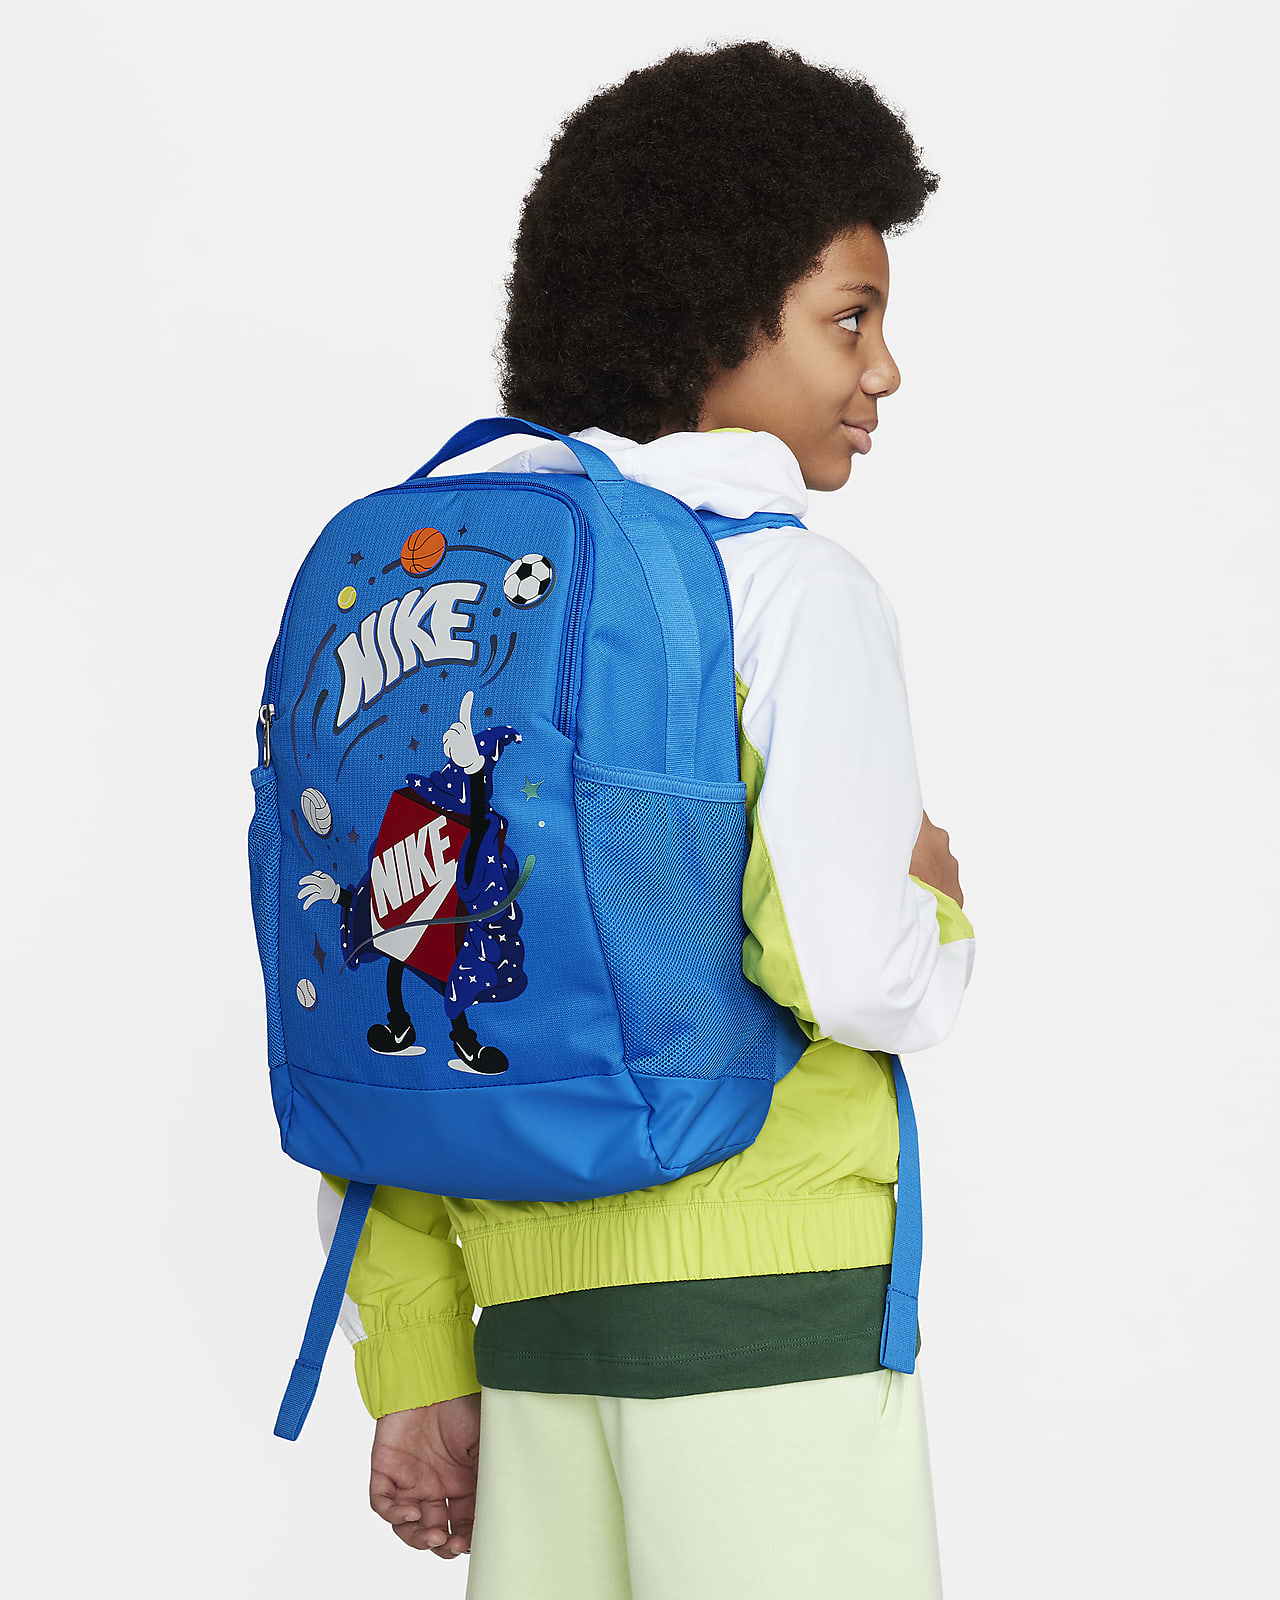 Nike Brasilia 兒童背包 (18 公升)